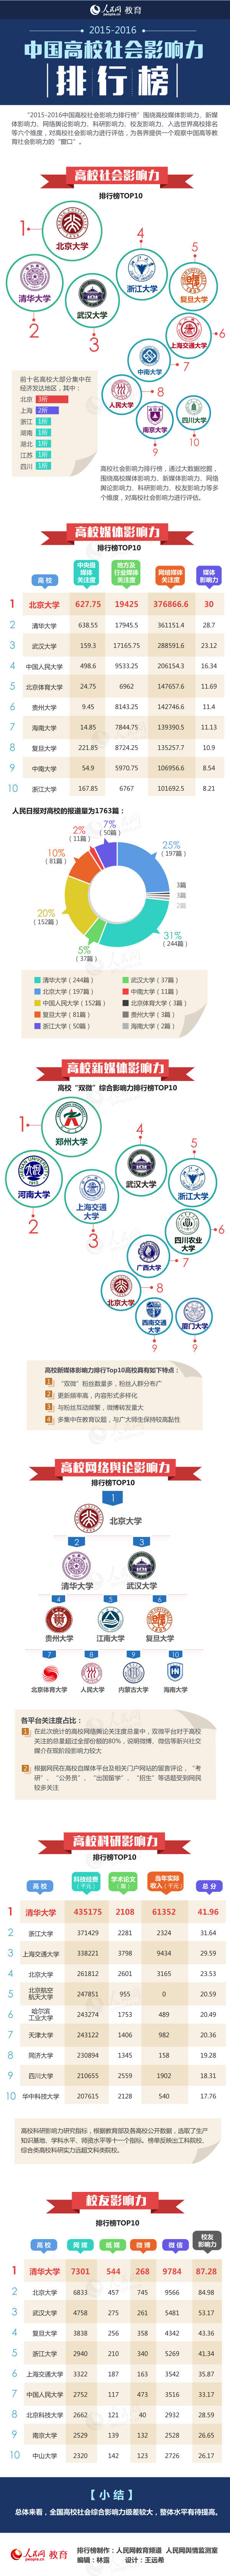 2015-2016中國高校社會影響力排行榜